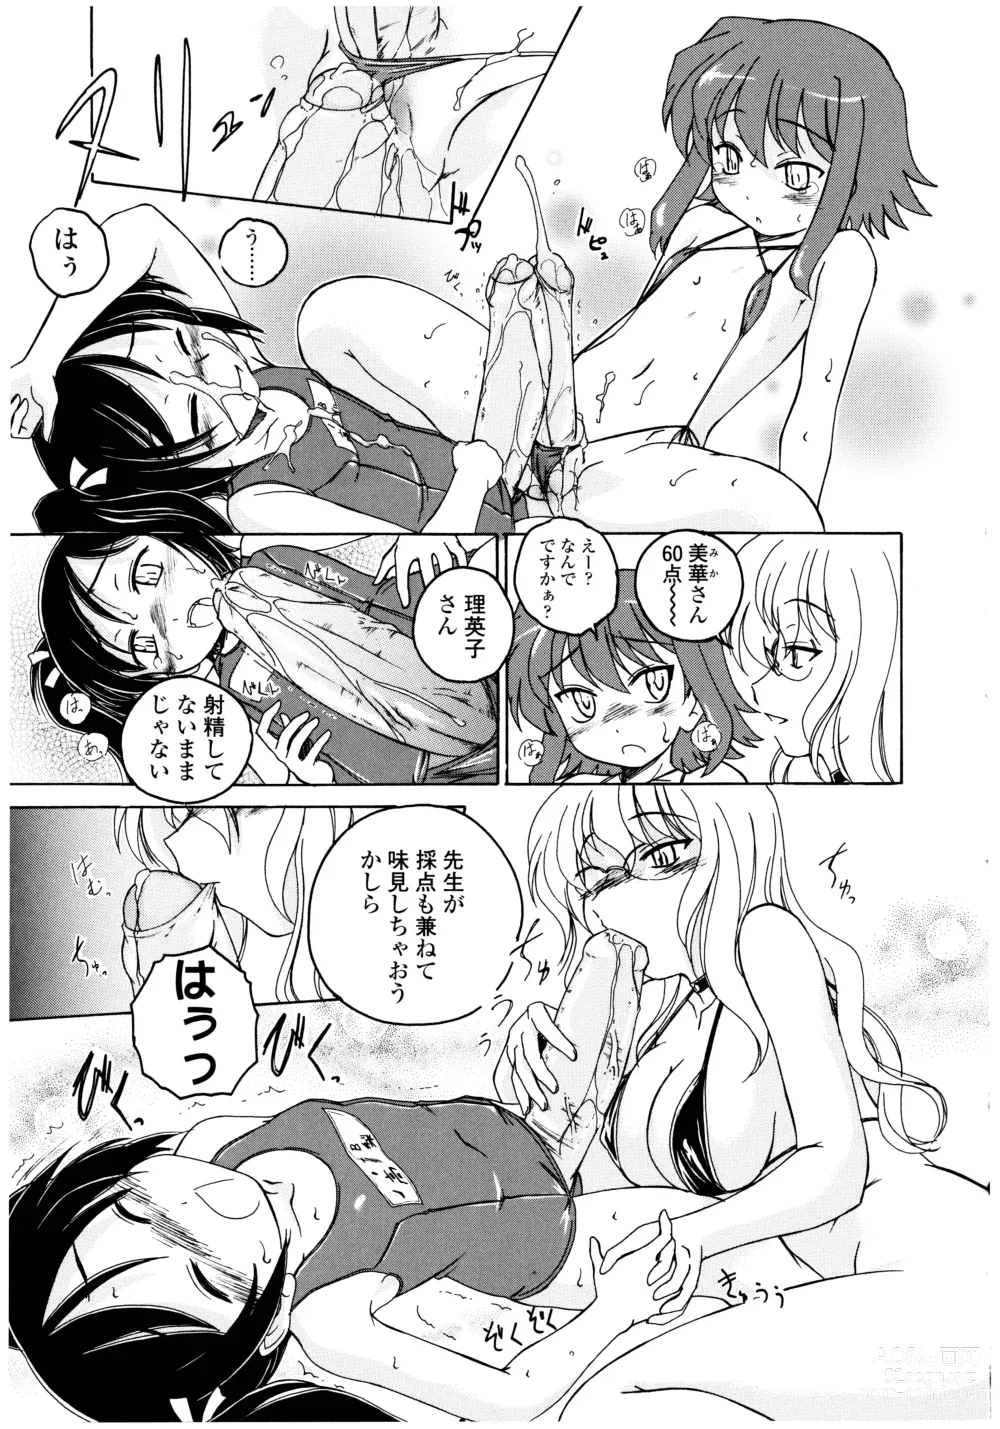 Page 19 of manga Futanari Yesterday